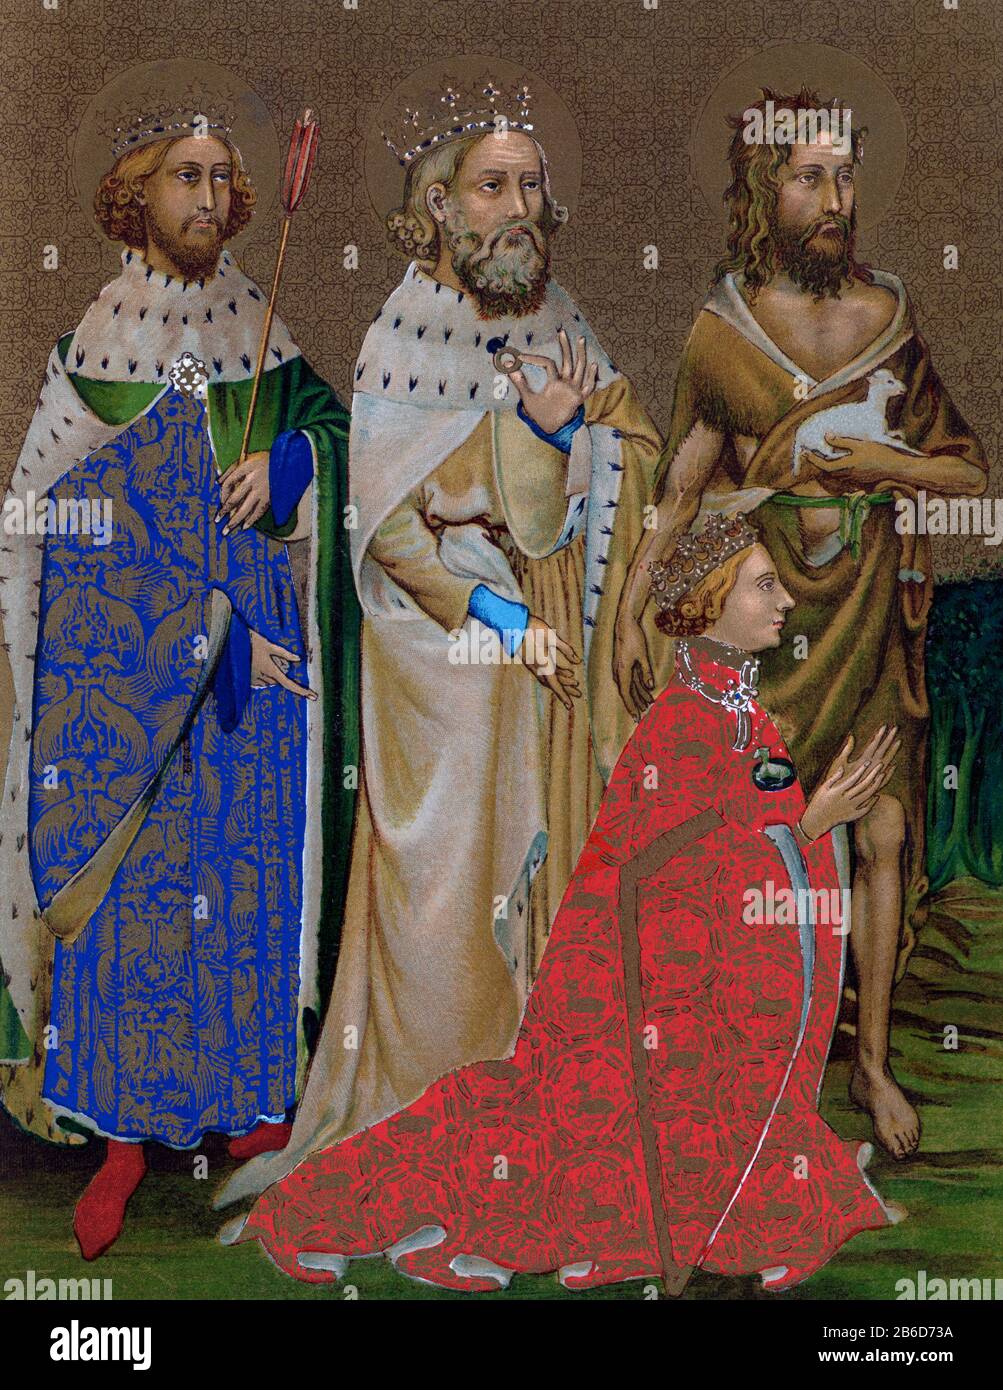 Das Wilton Diptych (c1395-1399): Linke Innenseite. Das Wilton Diptych ist ein seltenes Überleben eines spätmittelalterlichen religiösen Tafelbildes aus England. Das Diptychon wurde für König Richard II von England gemalt, der vor der Jungfrau und dem Kind kniet. Er wird ihnen von (von rechts nach links) seinem schutzheiligen Johannes dem Täufer und von den englischen Heiligen König Edward dem Bekenner und König Edmund dem Märtyrer vorgestellt. Das Gemälde ist ein Beispiel für den internationalen gotischen Stil. Stockfoto